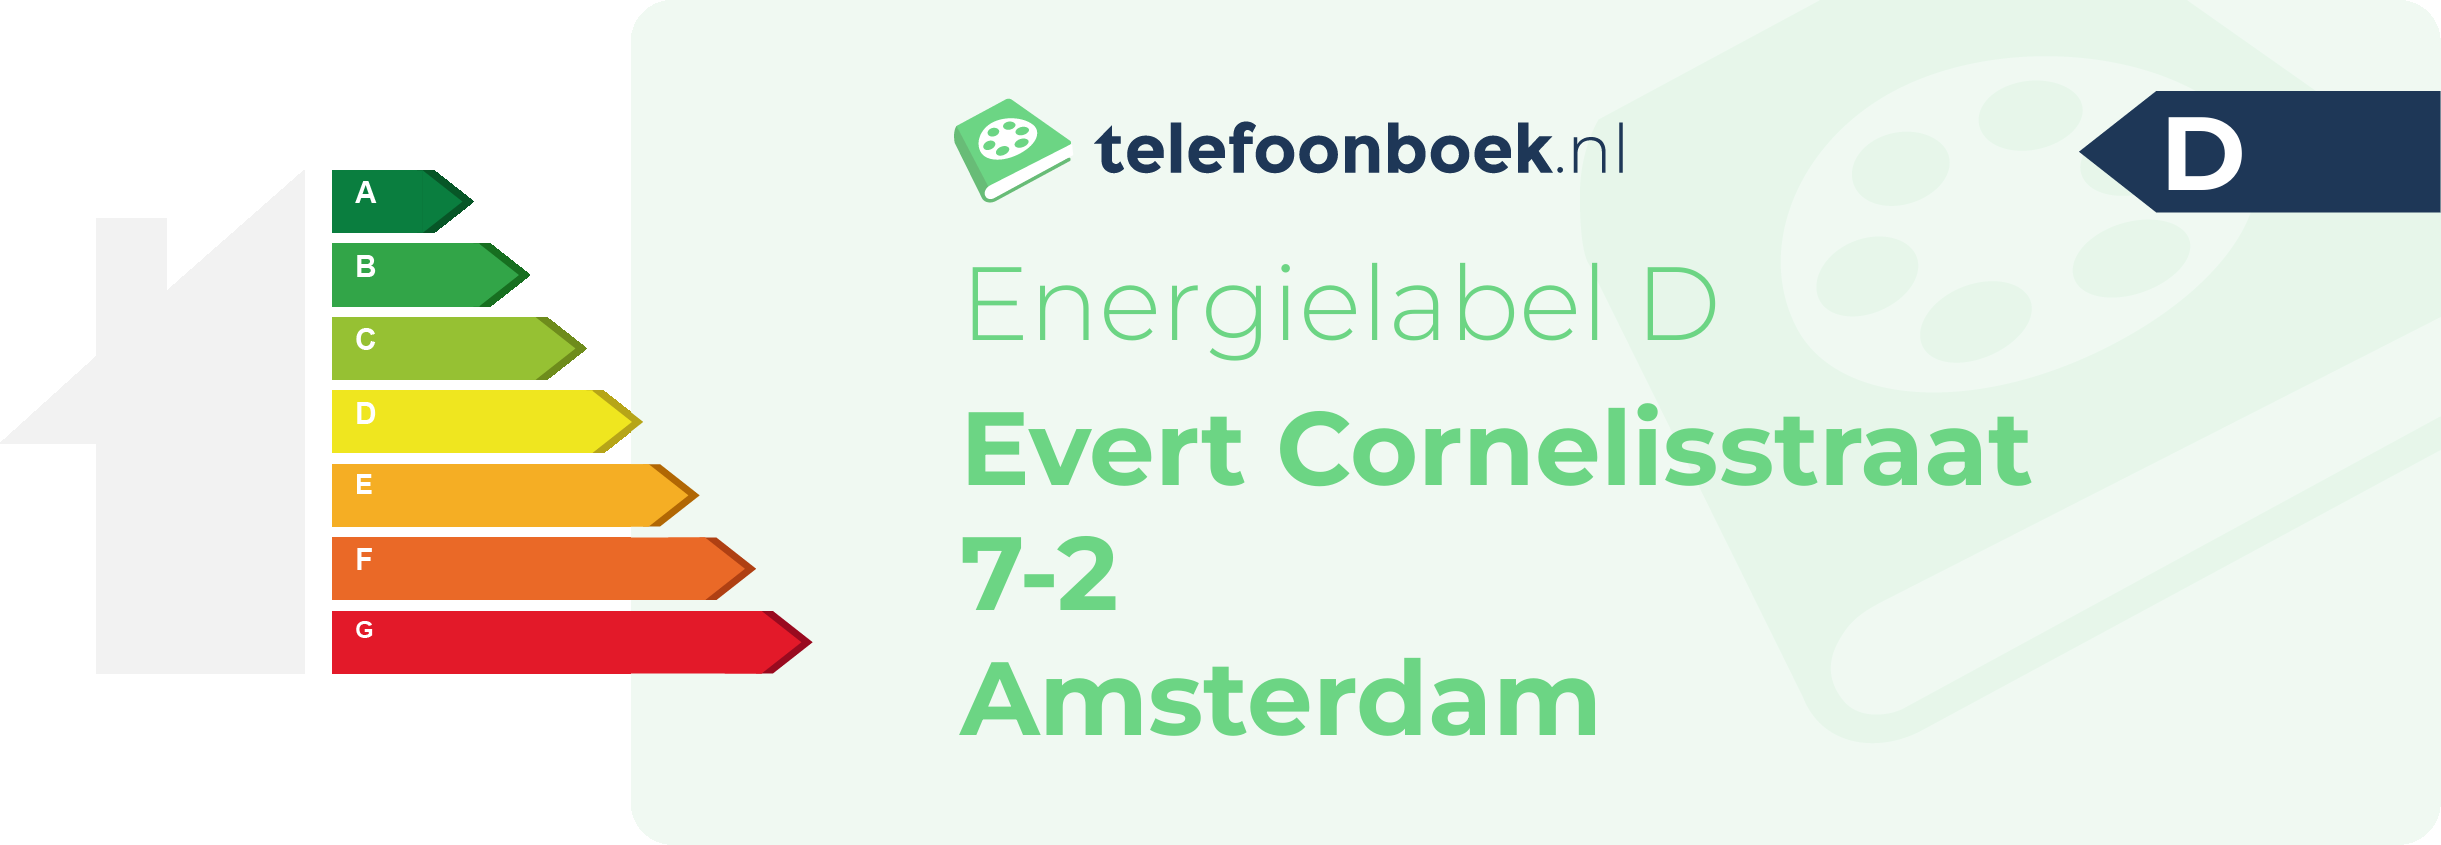 Energielabel Evert Cornelisstraat 7-2 Amsterdam